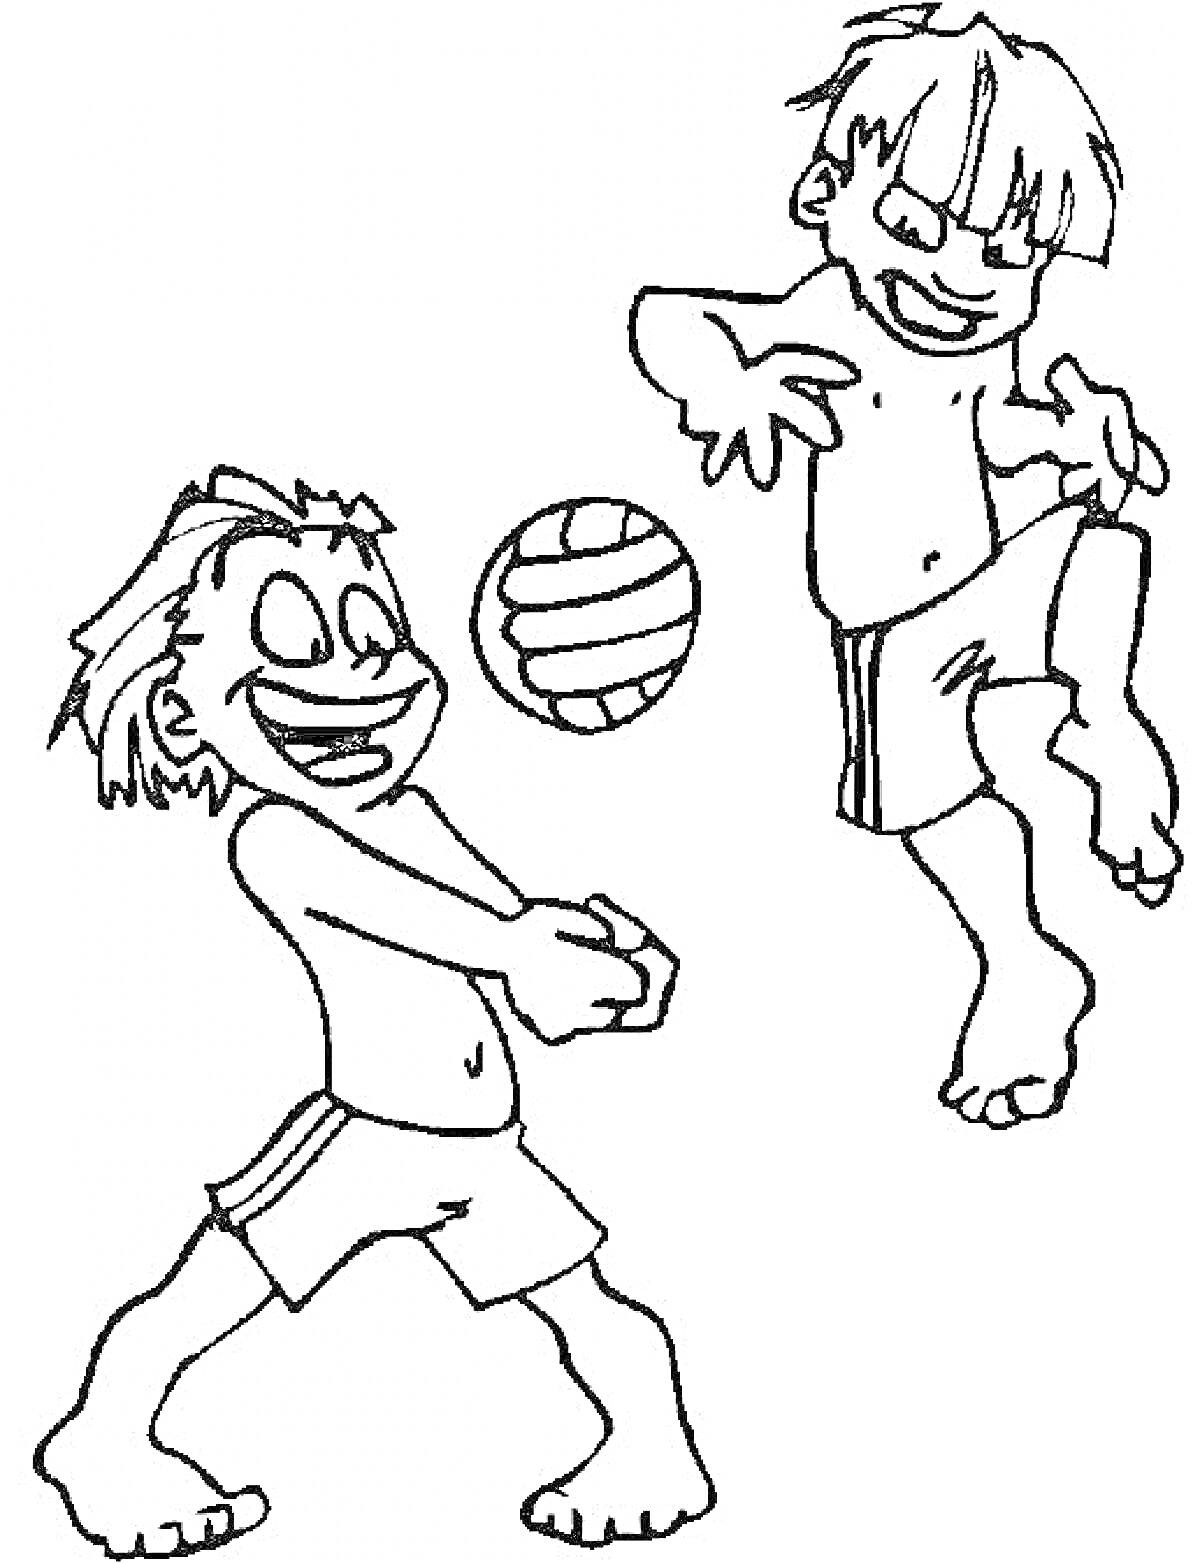 Два мальчика играют в волейбол